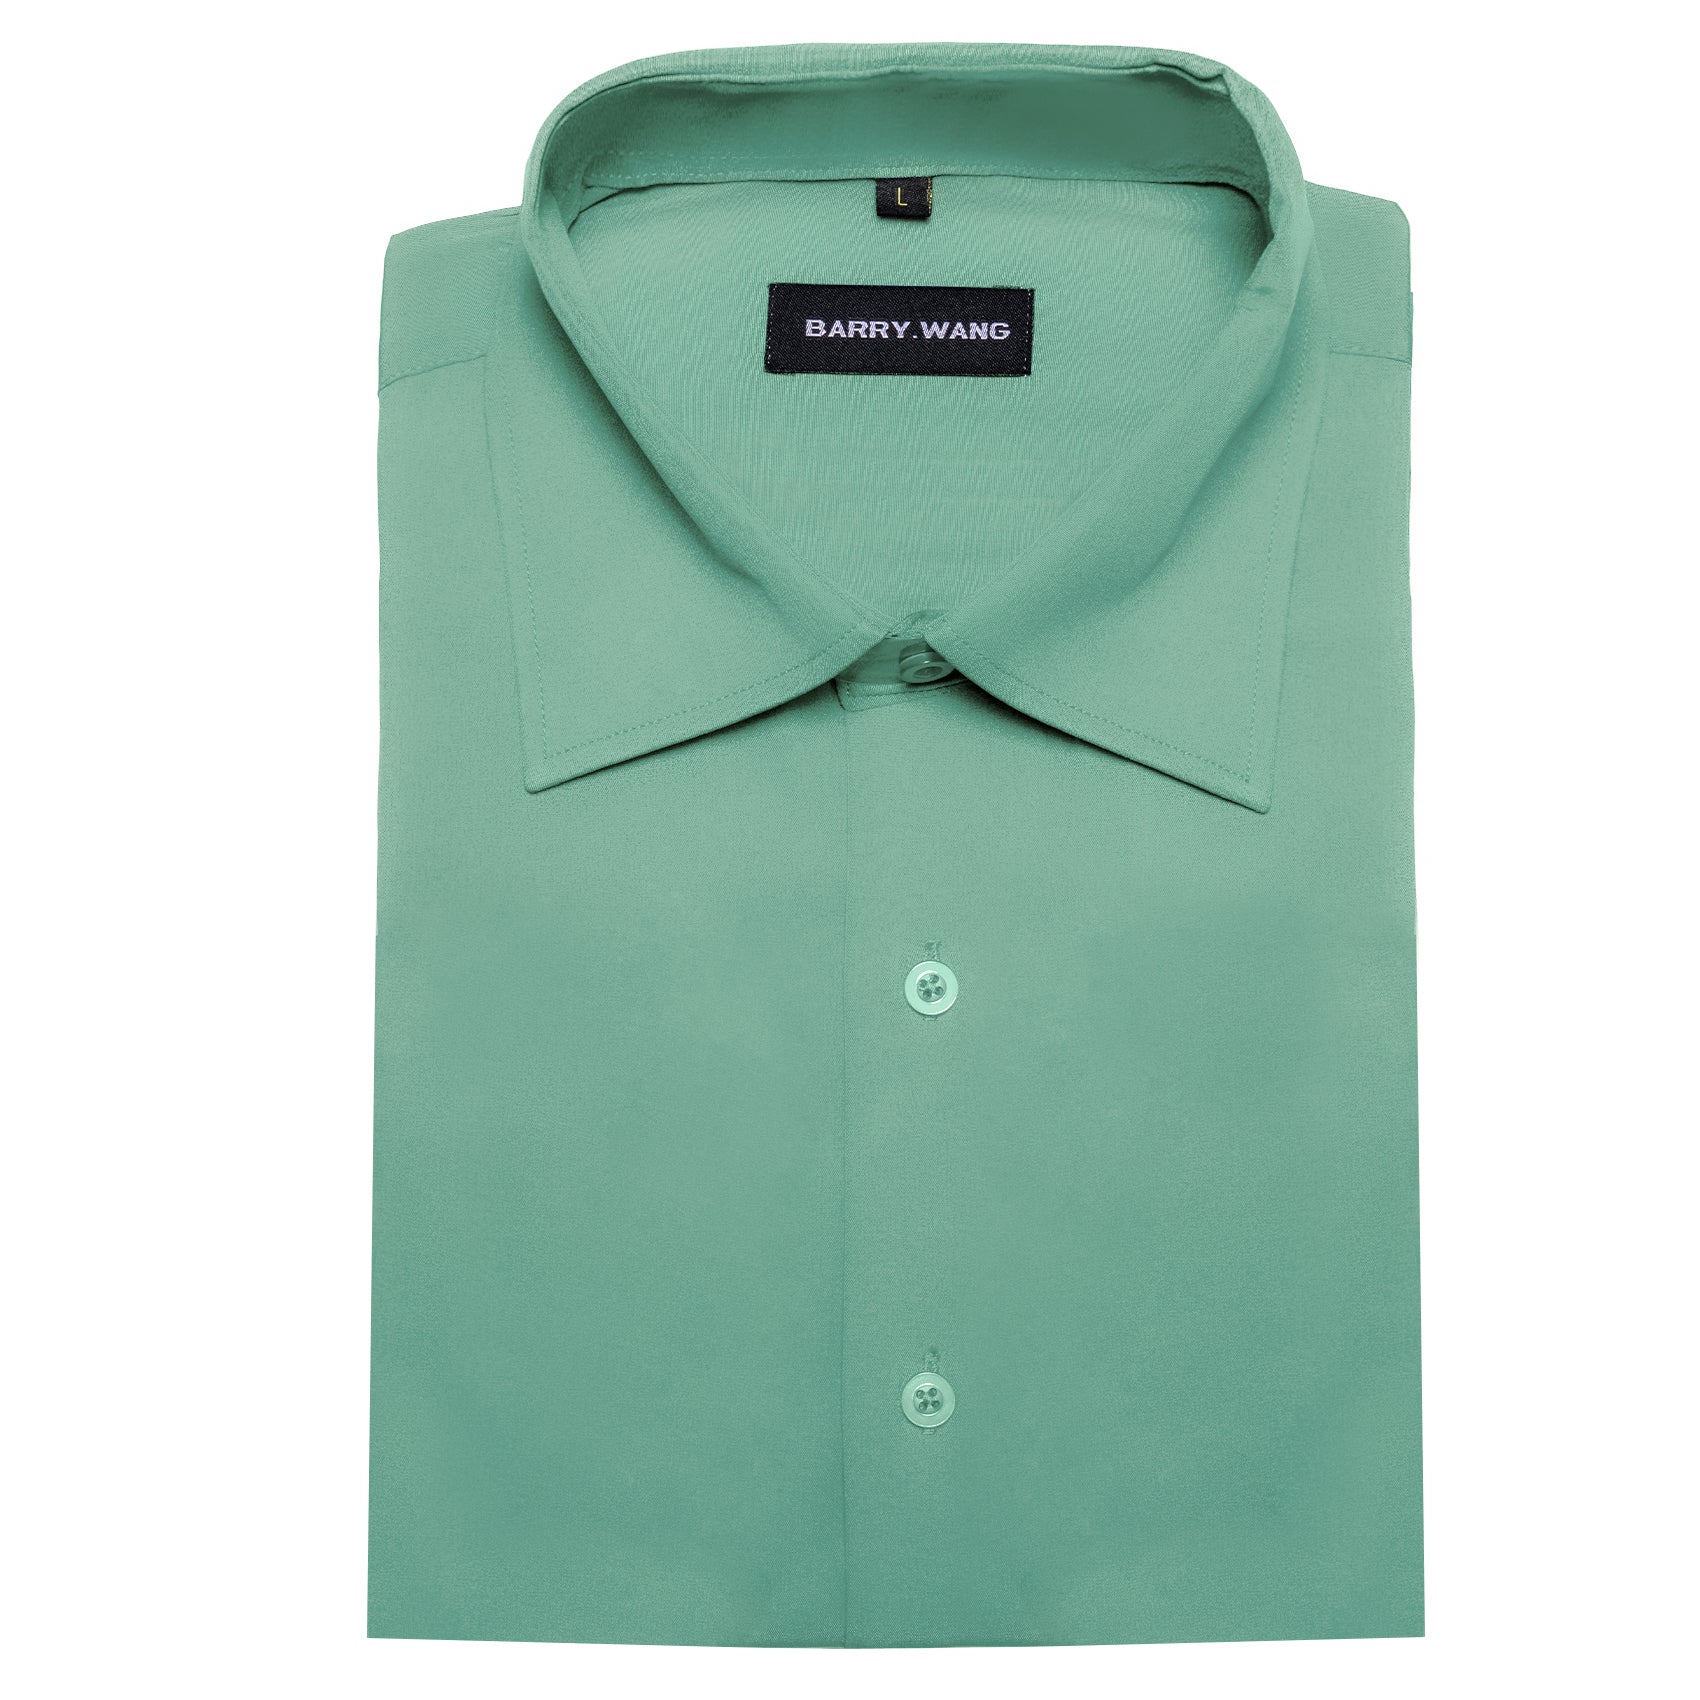 Green shirt men's button up shirts